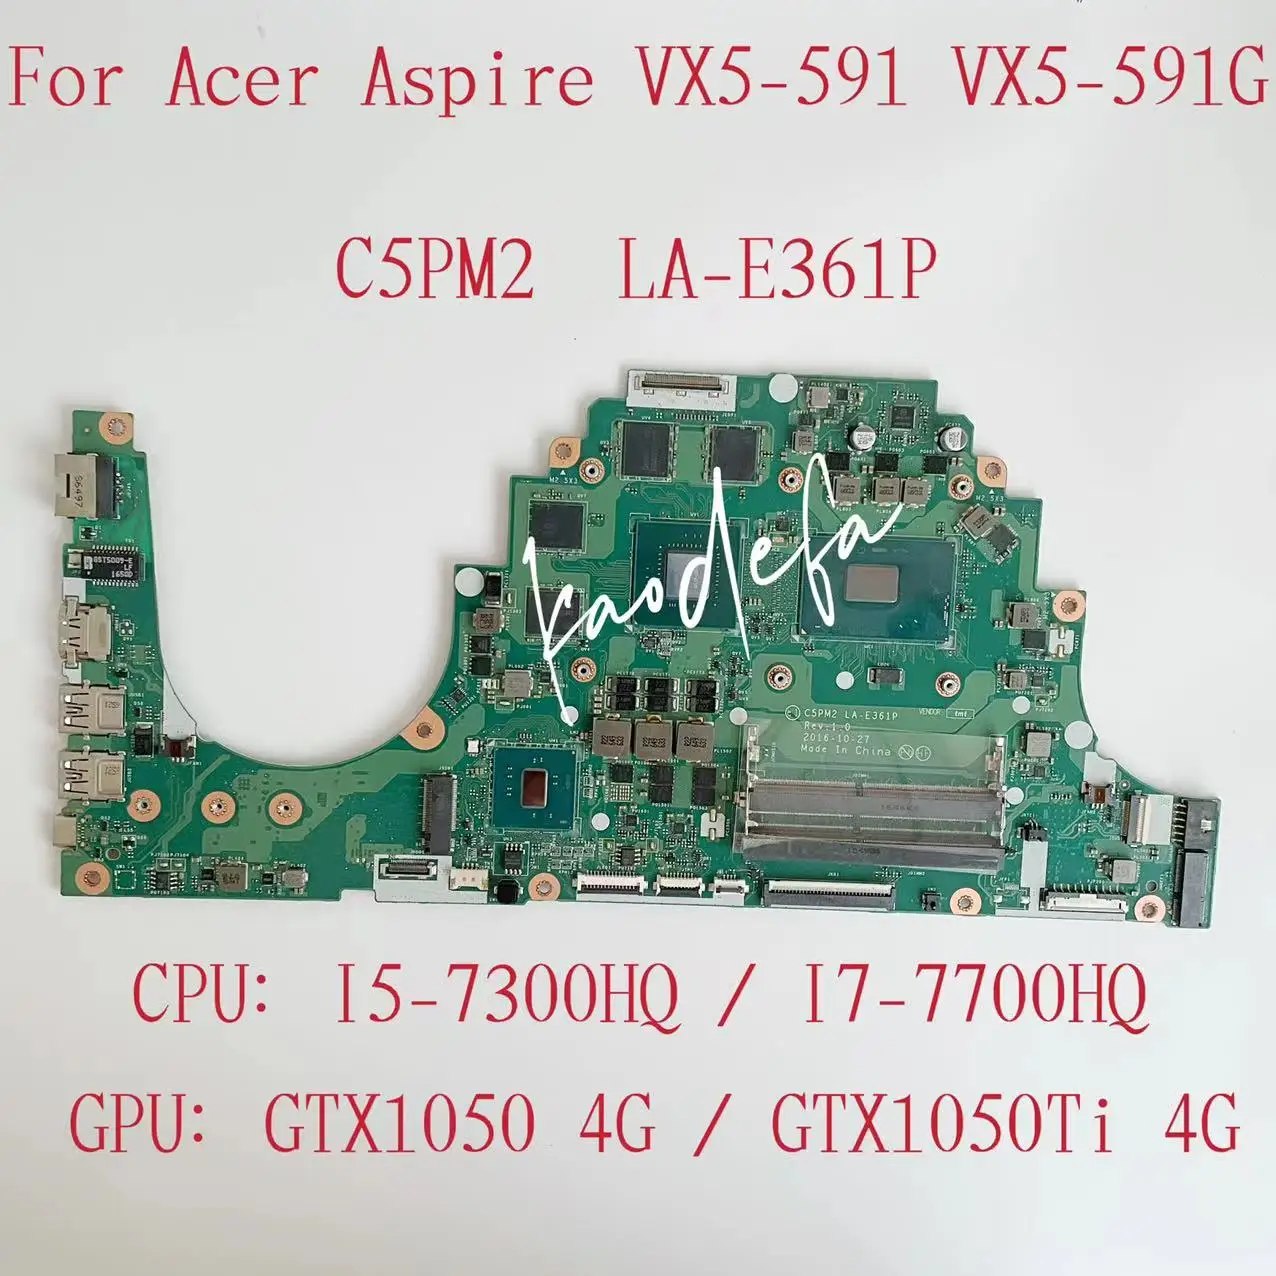 C5PM2 LA-E361P ACER ASPIRE VX5-591 노트북 마더 보드 CPU I5-7300HQ / I7-7700HQ GPU : GTX1050 / 1050TI 4G 테스트 OK